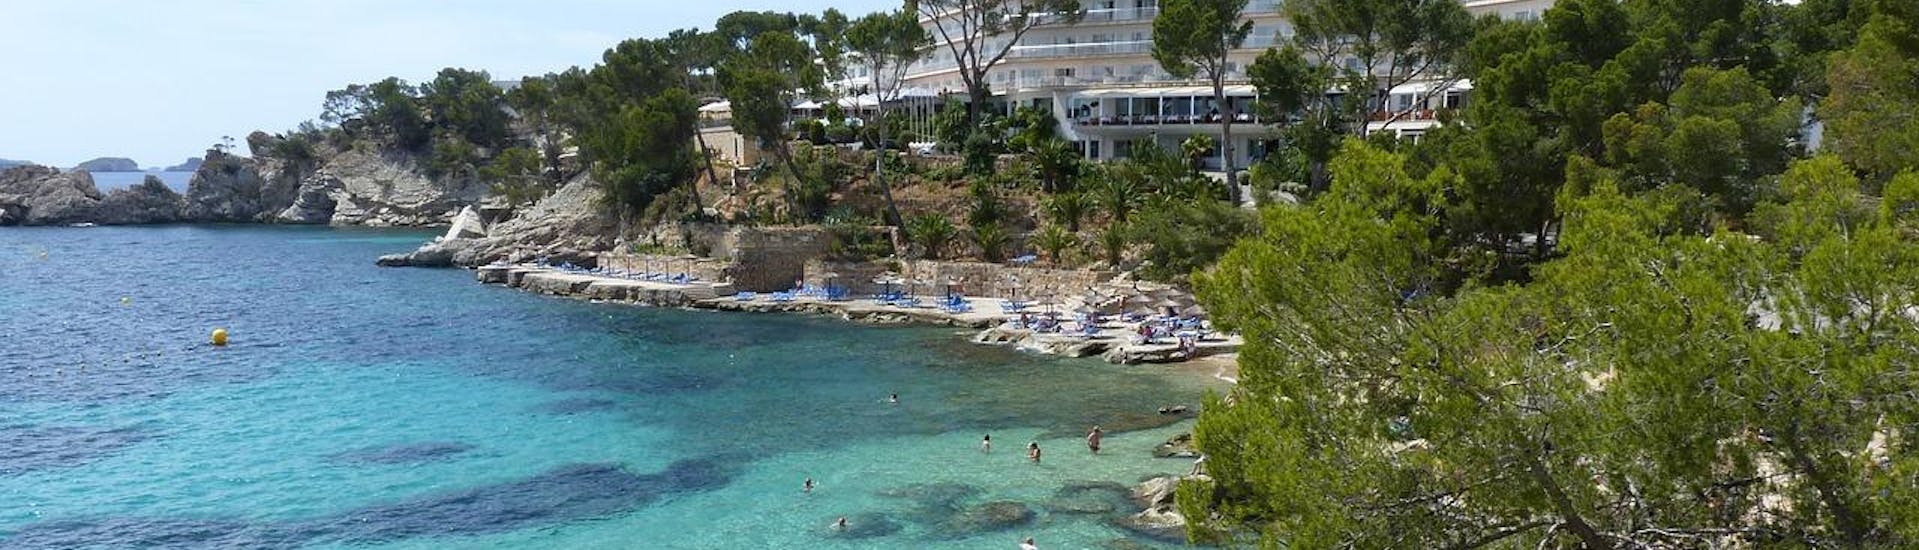 Een van de belangrijkste en mooiste stranden van Fornells in Menorca.